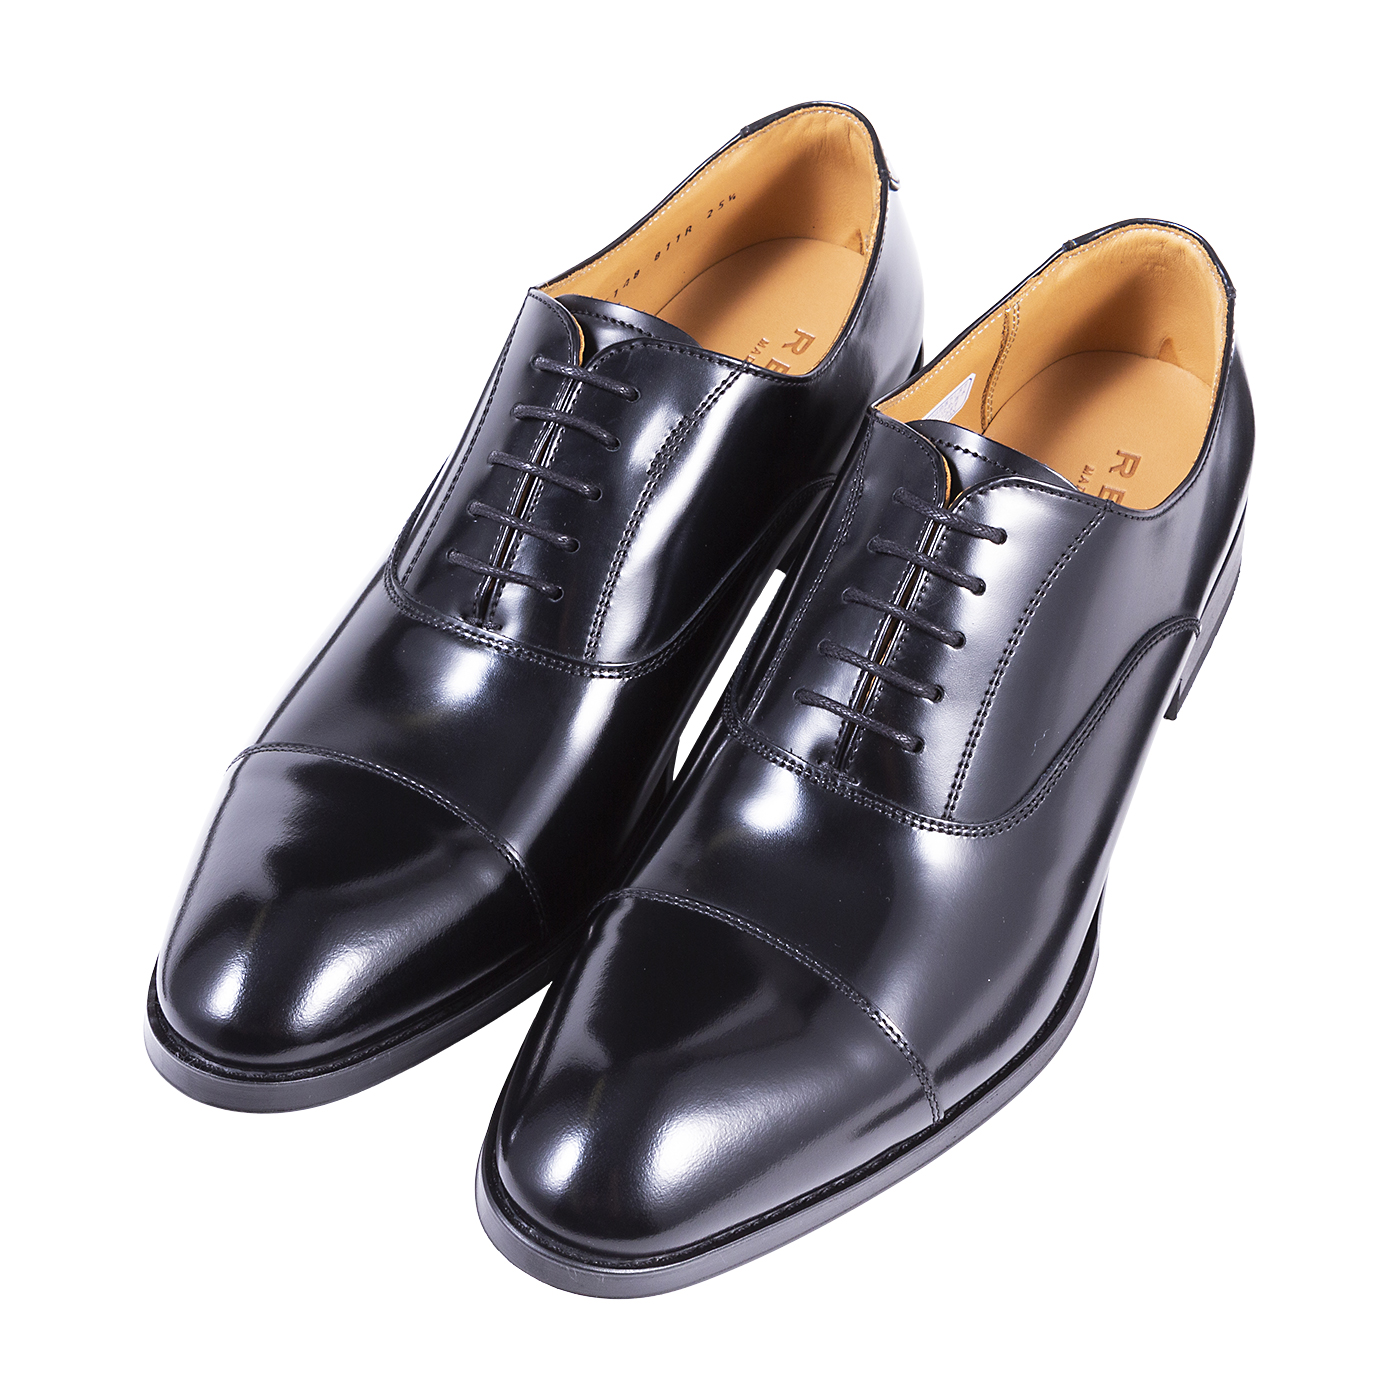 REGAL リーガル REGAL 靴 メンズ ビジネスシューズ スワールトウ 紳士靴 革靴 日本製 本革 フォーマル リクルート フレッシャーズ  ワイズ2E